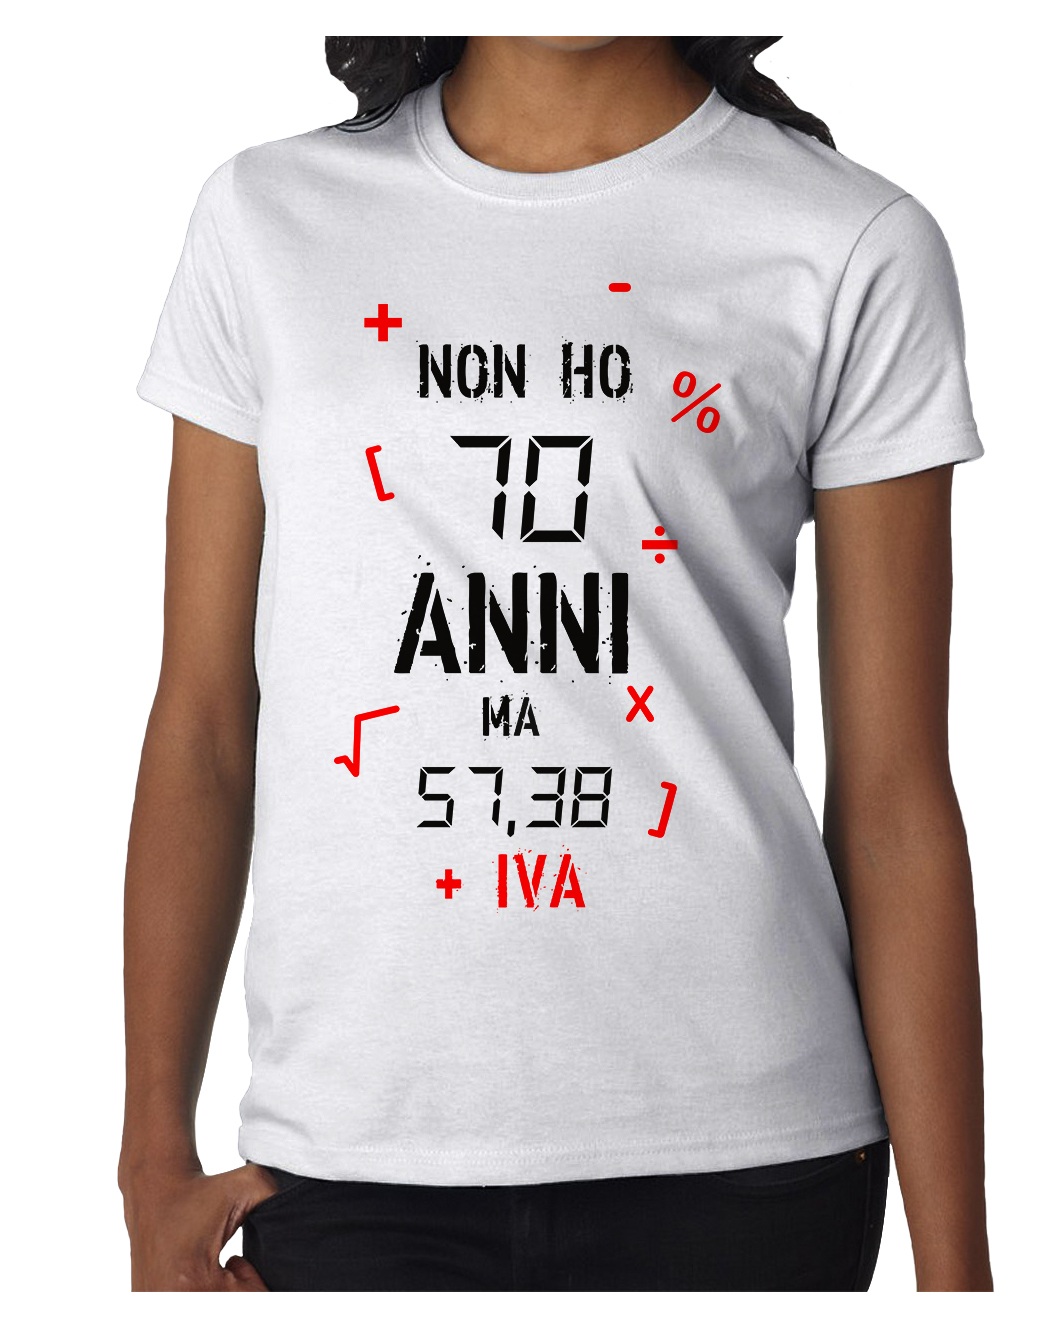 Tshirt Compleanno Donna Non ho 70 anni ma 57,38 + IVA - tshirt simpatiche e  divertenti - idea regalo - ColorFamily